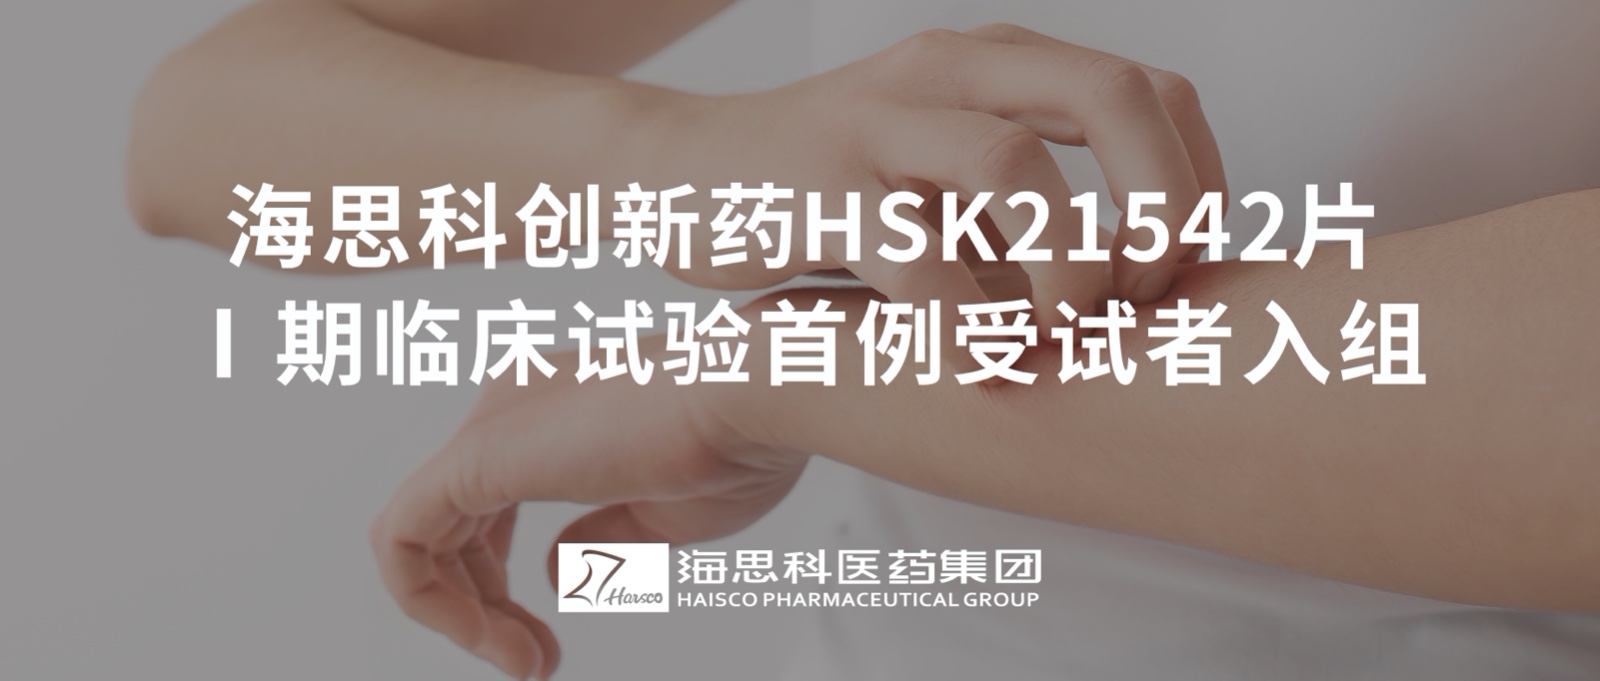 365体育中国官方网站创新药HSK21542片Ⅰ期临床试验首例受试者入组